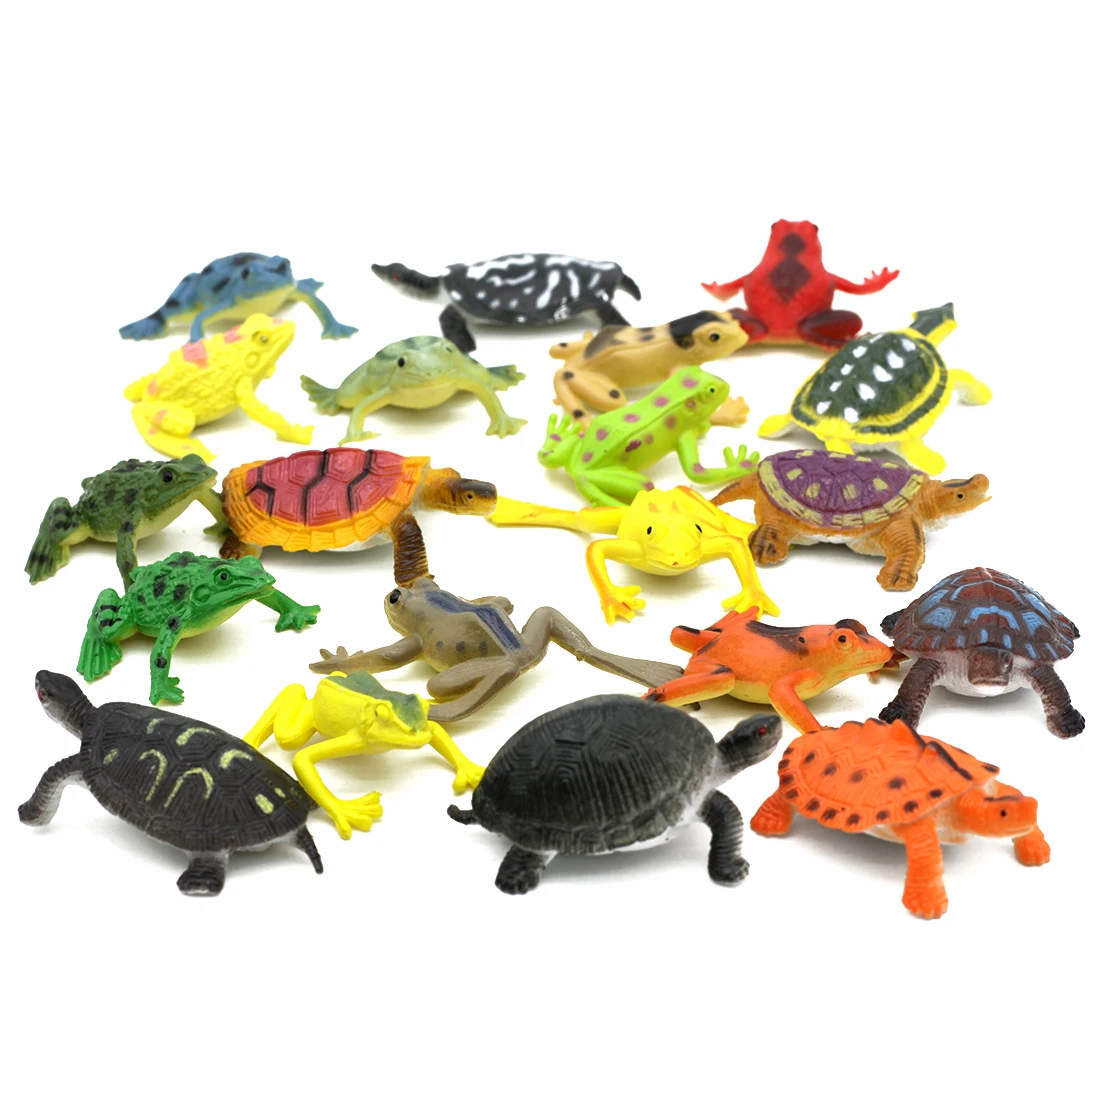 12 Adet Renkli Plastik Kurbağalar Kaplumbağalar Simüle Hayvan Modeli Eylem oyuncak figürler Zor Oyuncaklar Dinozor İlginç Oyuncak Çocuklar için